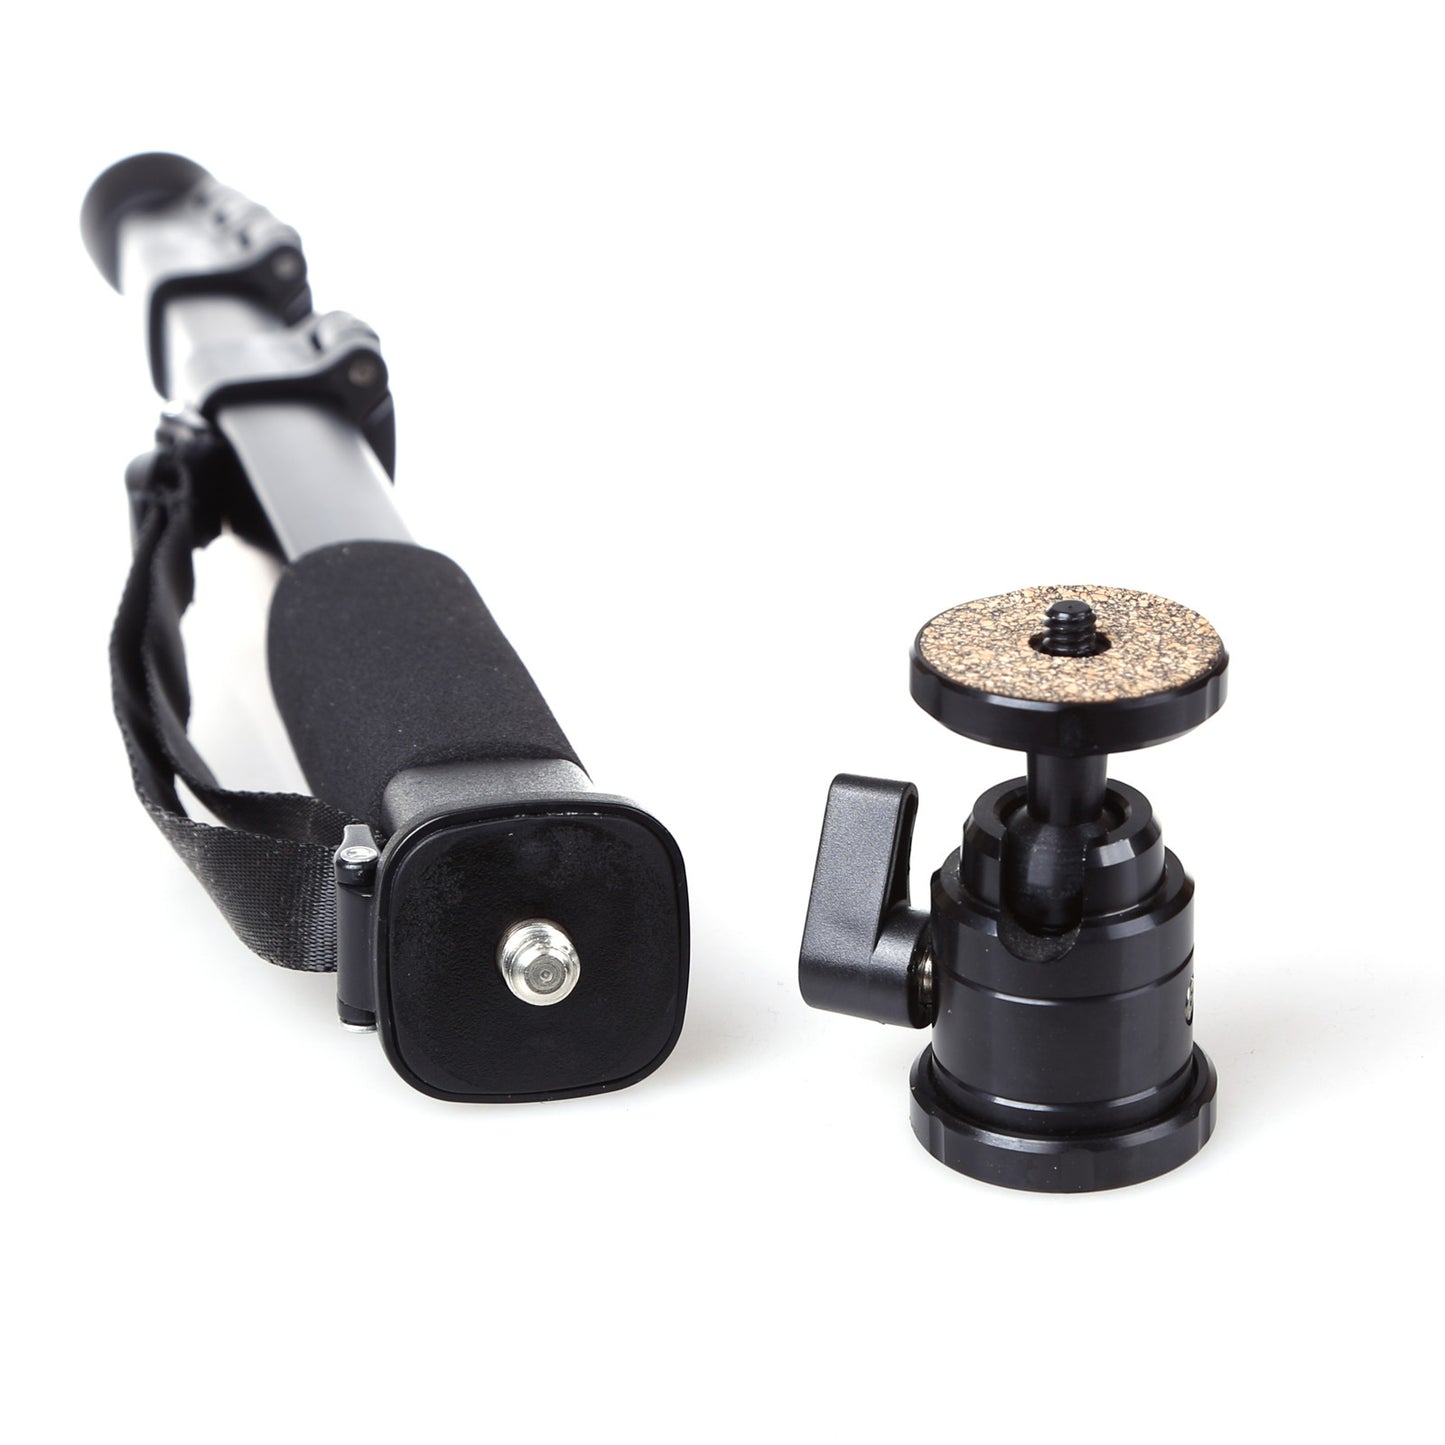 雲騰 286獨角架 輕便攜球型雲台 專業單反相機 數碼照相機 微單單腳架